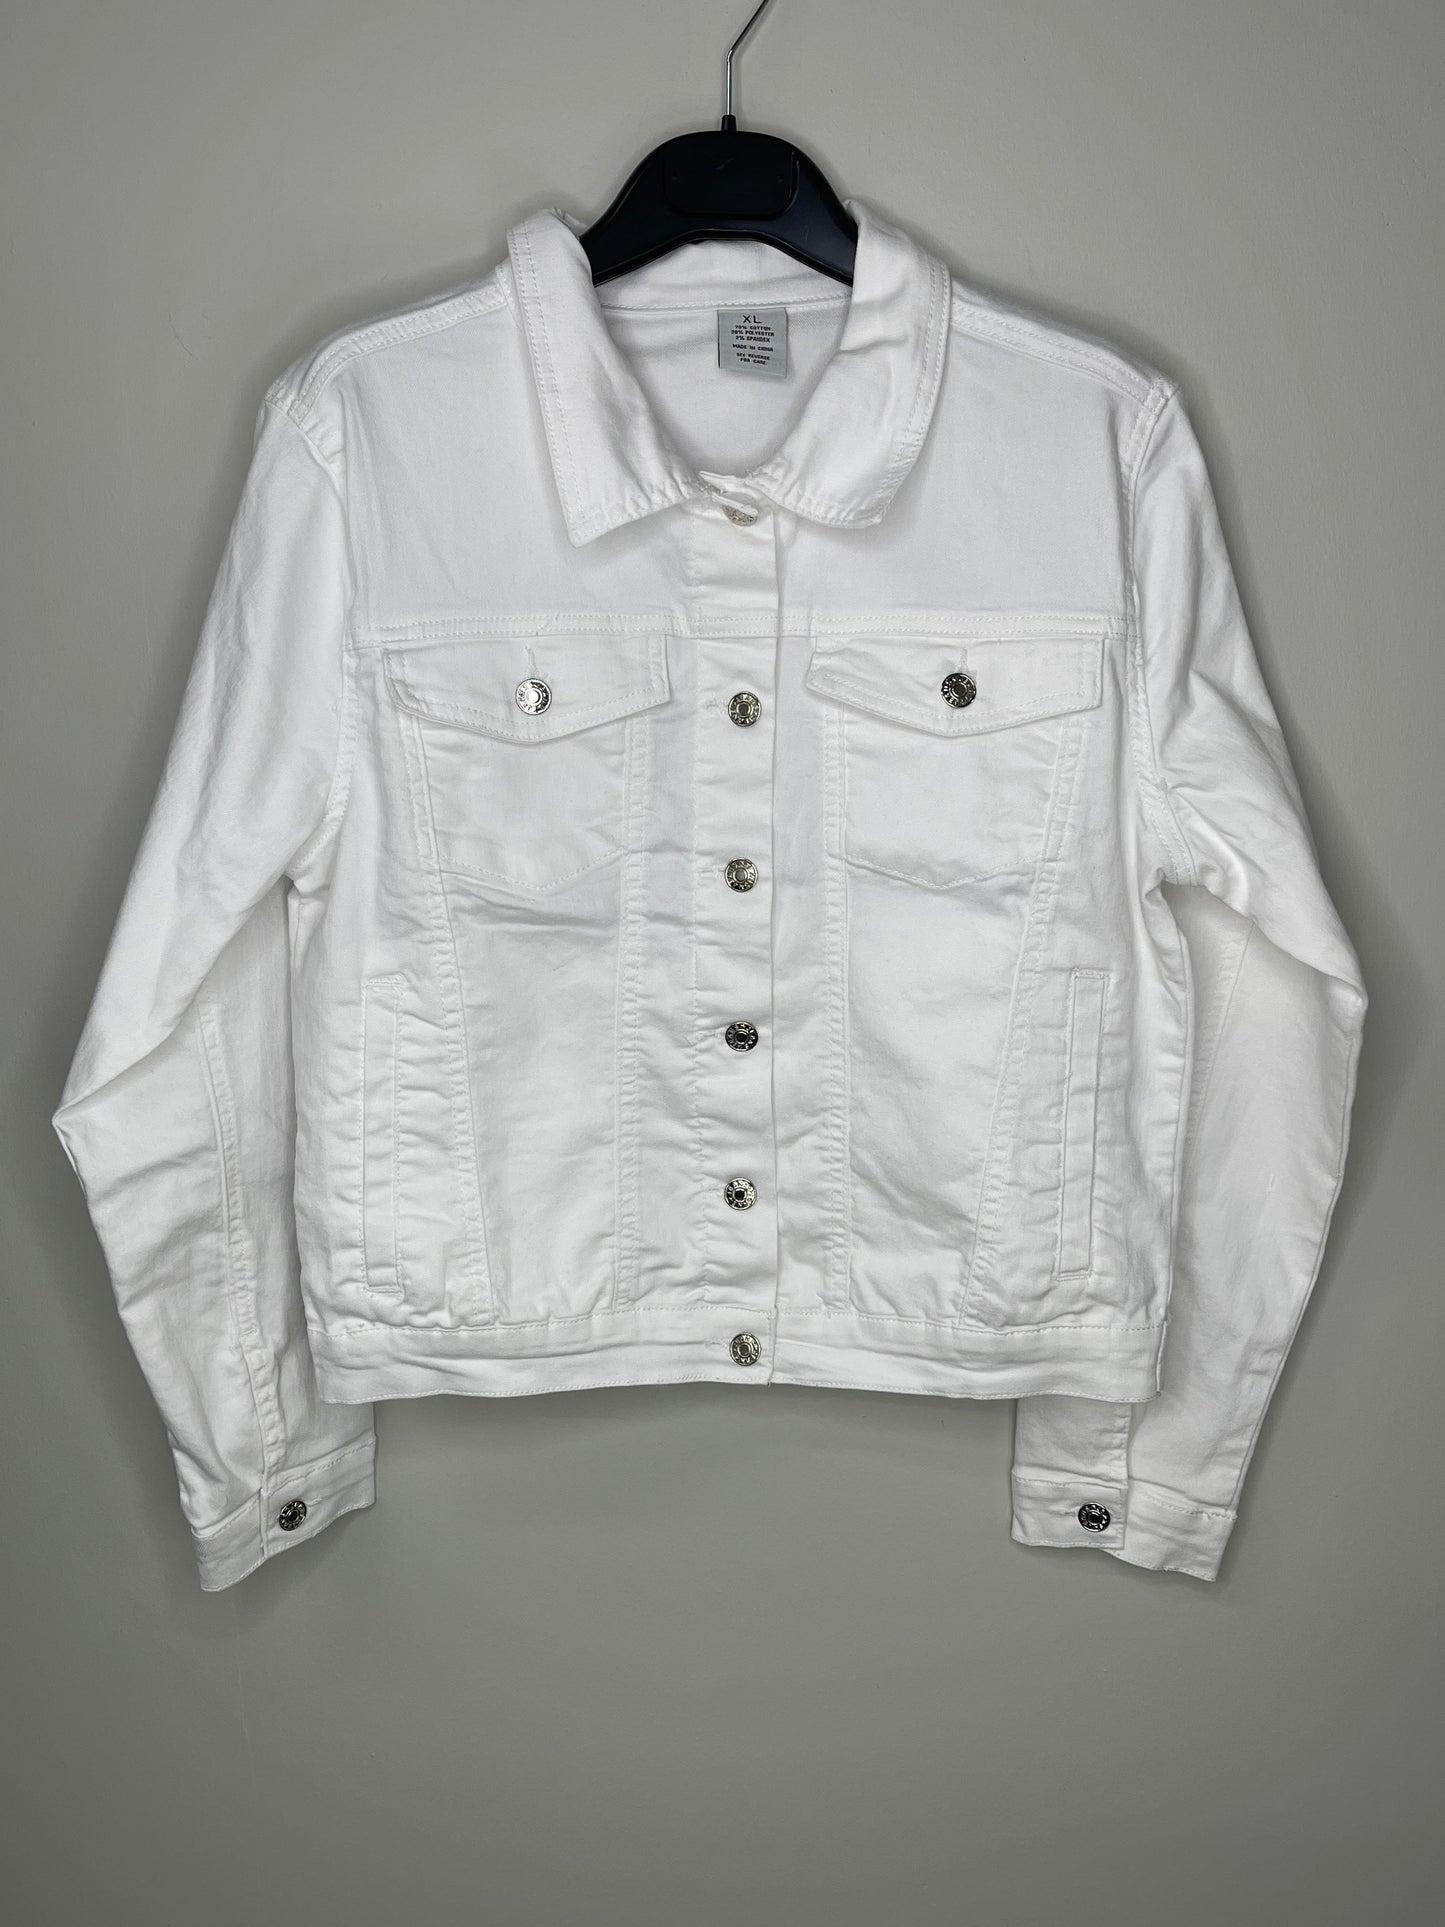 Jacket, Denim Extended Size White, Skull Flowers